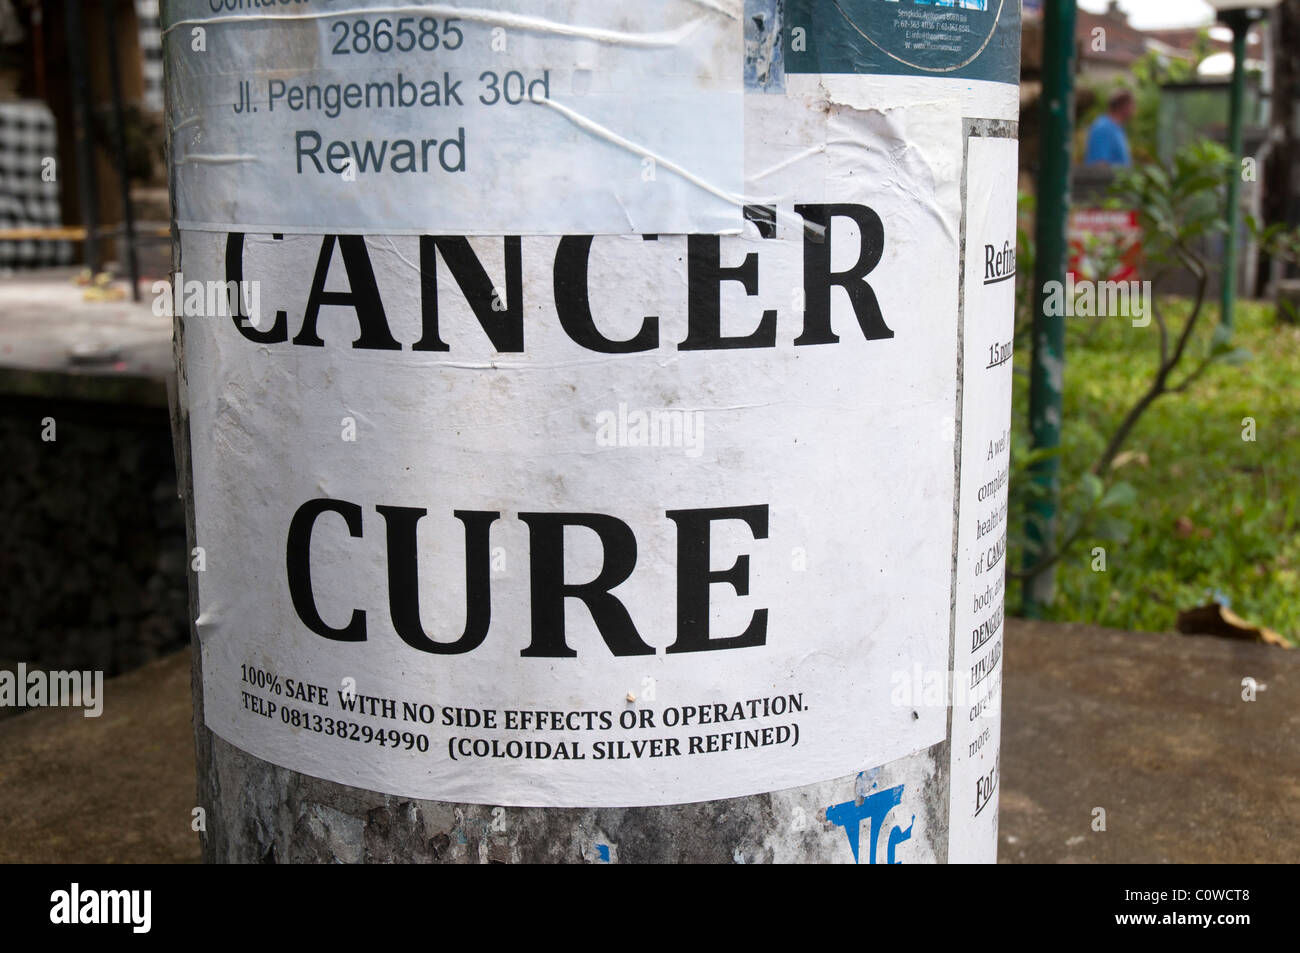 Une affiche publicitaire de soigner le cancer à Bali, Indonésie Banque D'Images